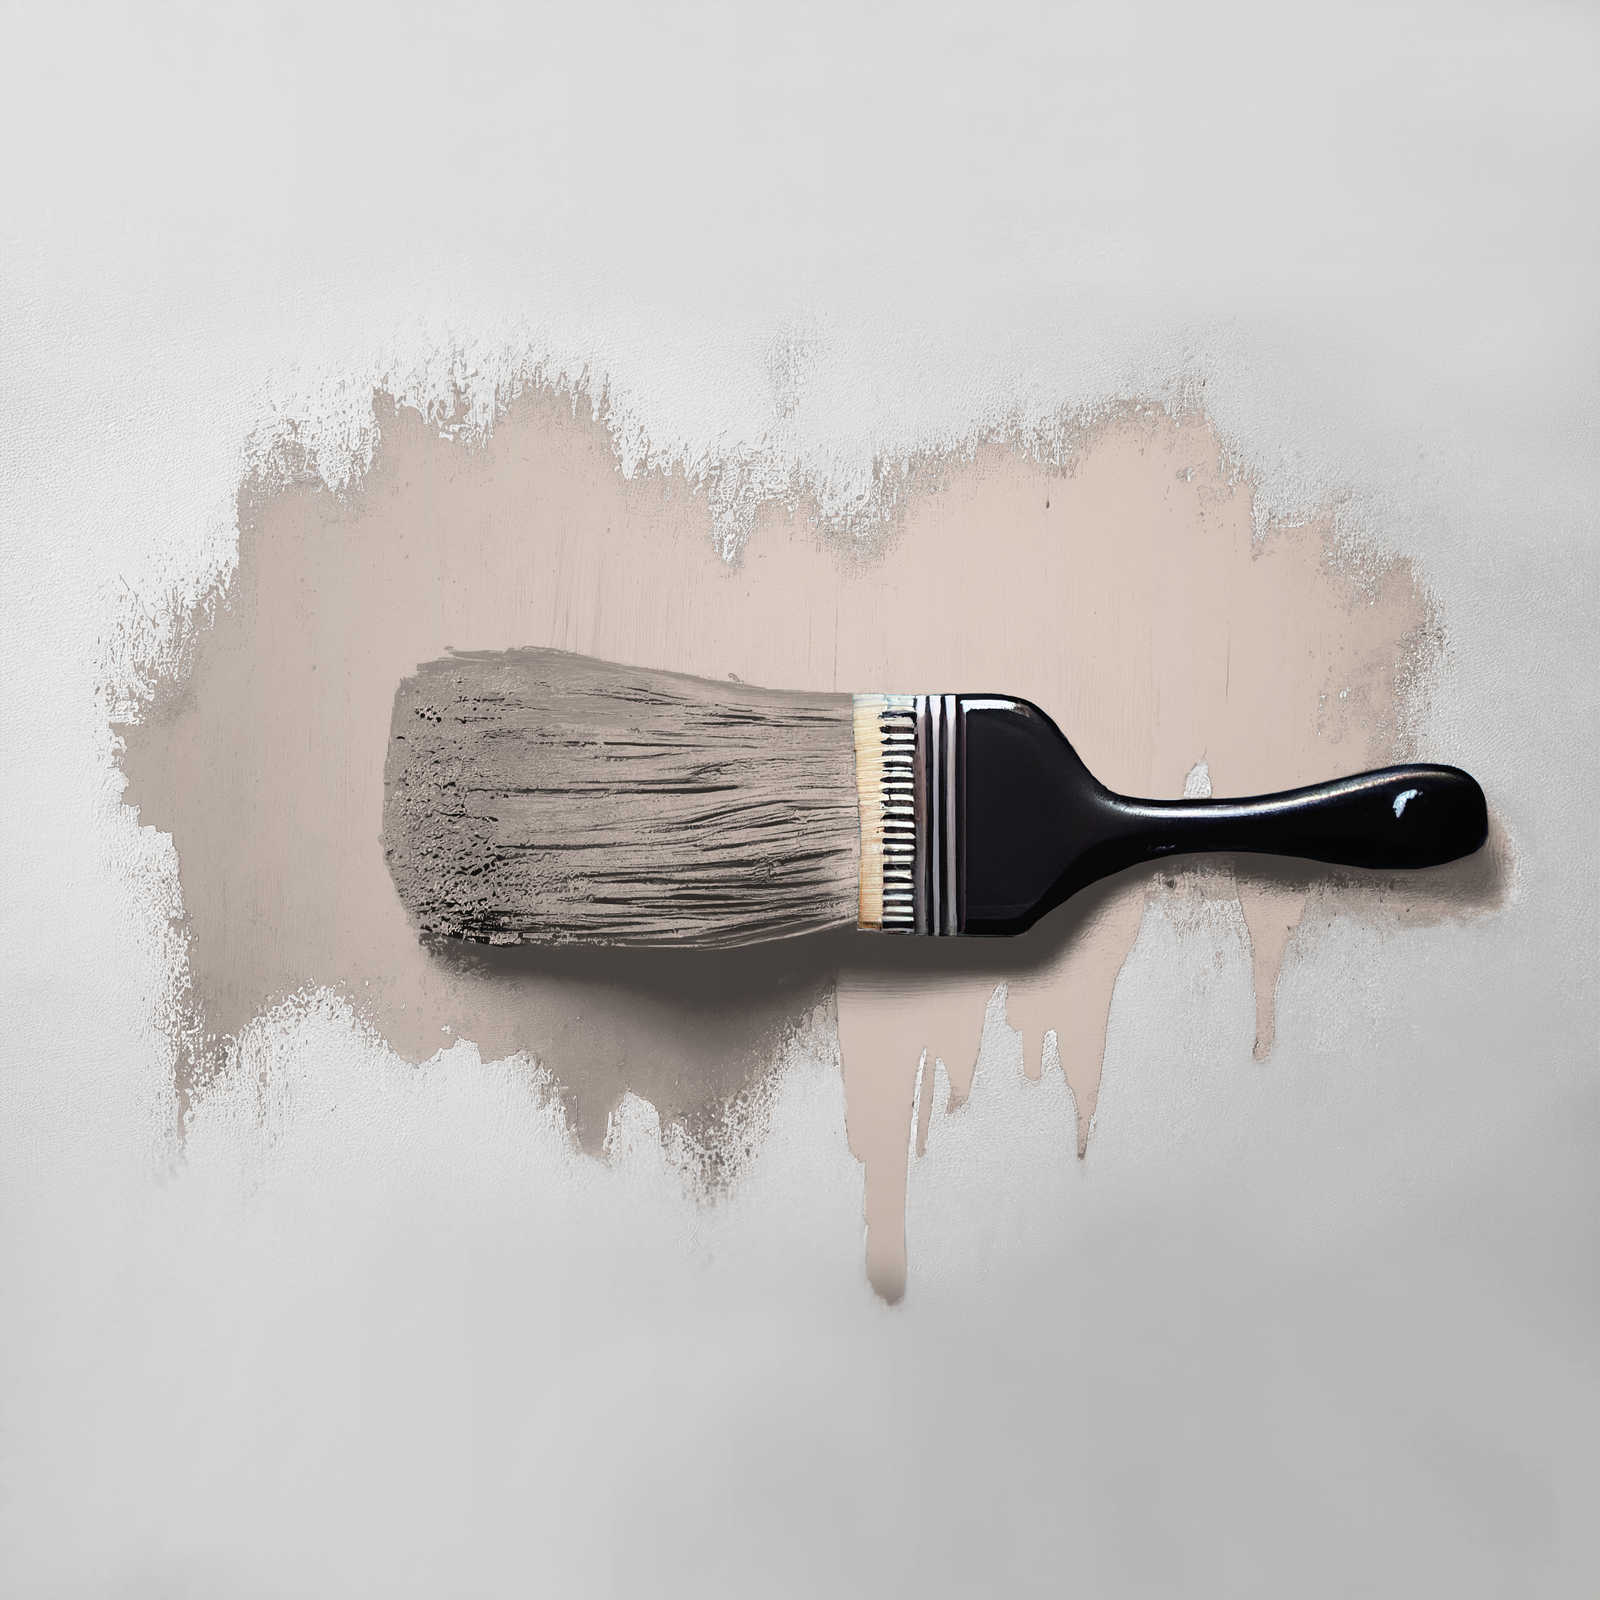             Pintura mural TCK6017 »Chilled Chai Latte« en gris suave – 5,0 litro
        